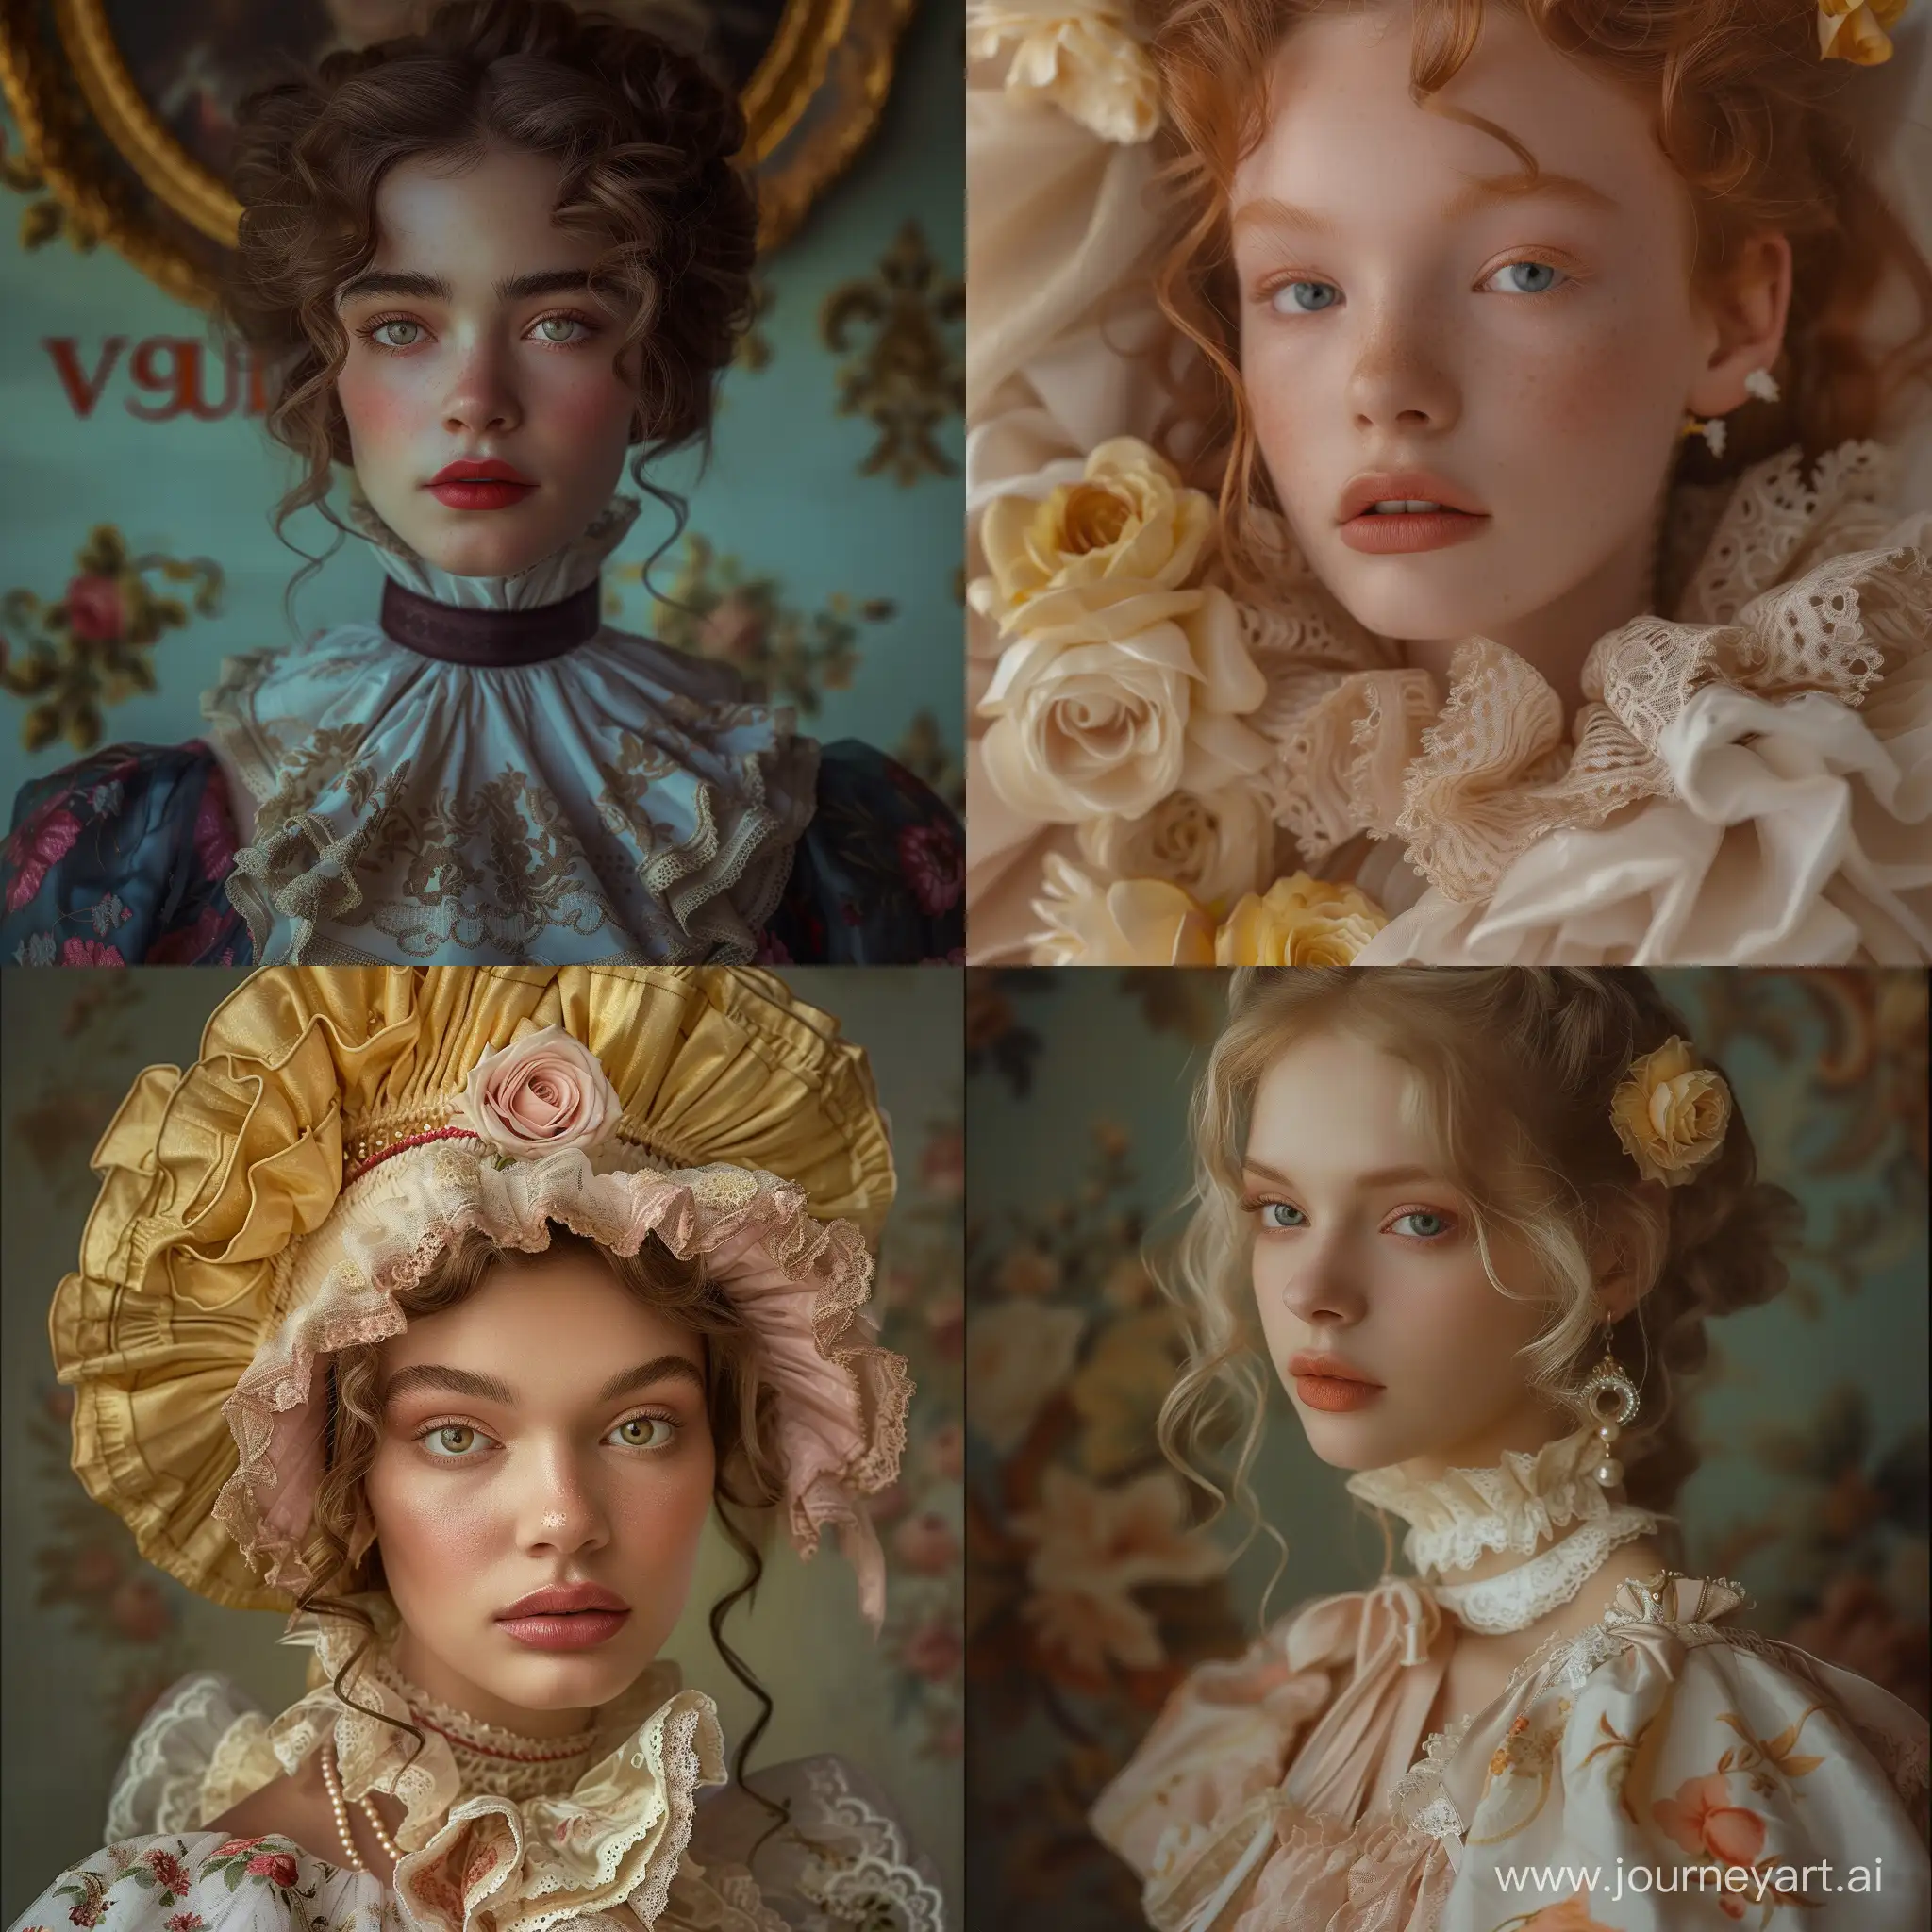 Futuristic-Rococo-Portrait-Vogue-Fashion-Cover-with-HyperRealistic-Style